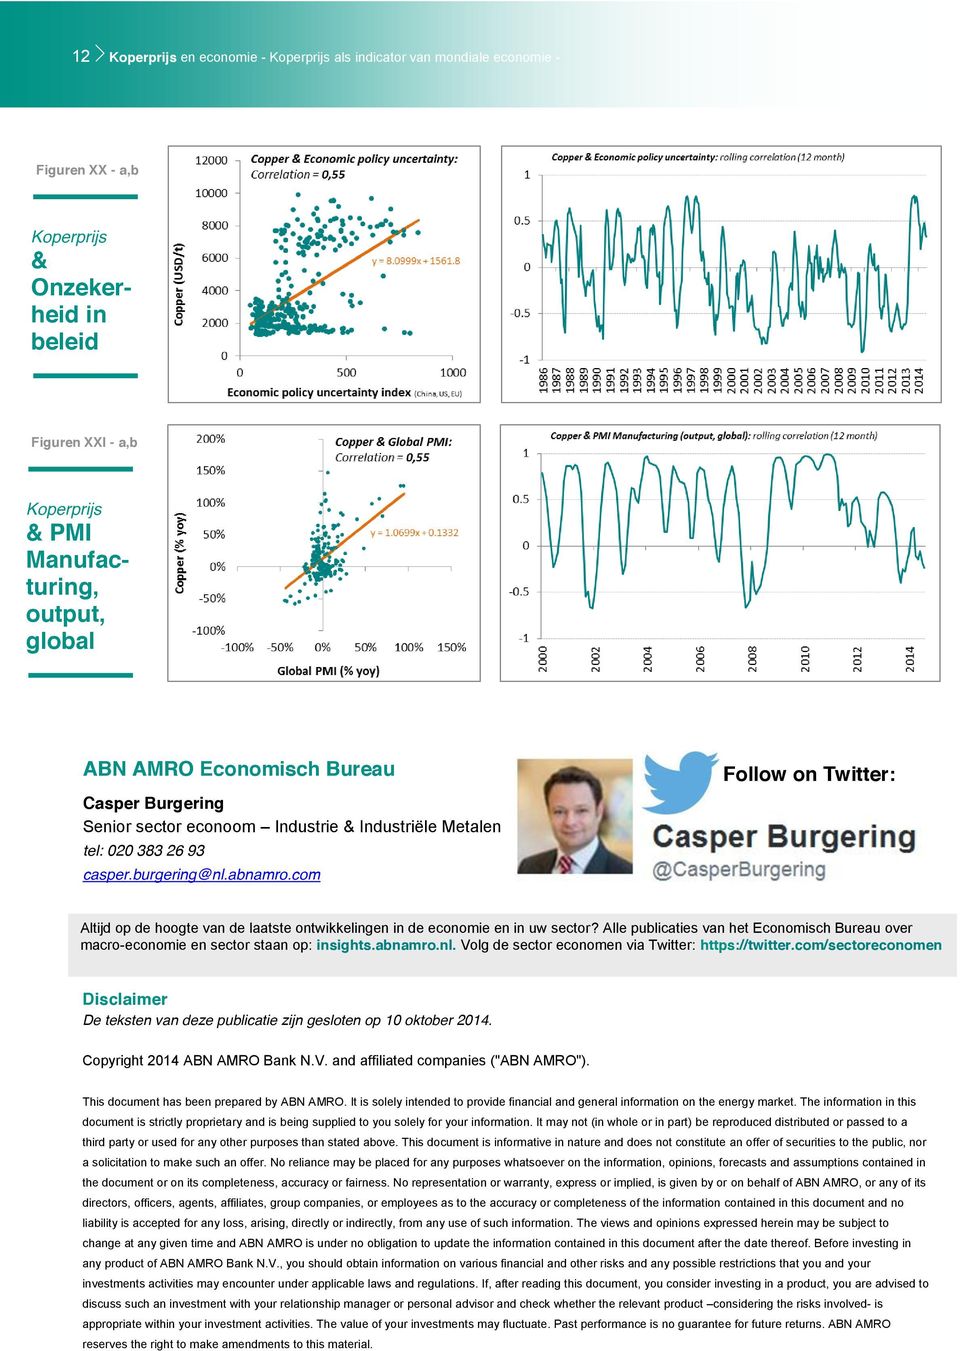 Alle publicaties van het Economisch Bureau over macro-economie en sector staan op: insights.abnamro.nl. Volg de sector economen via Twitter: https://twitter.